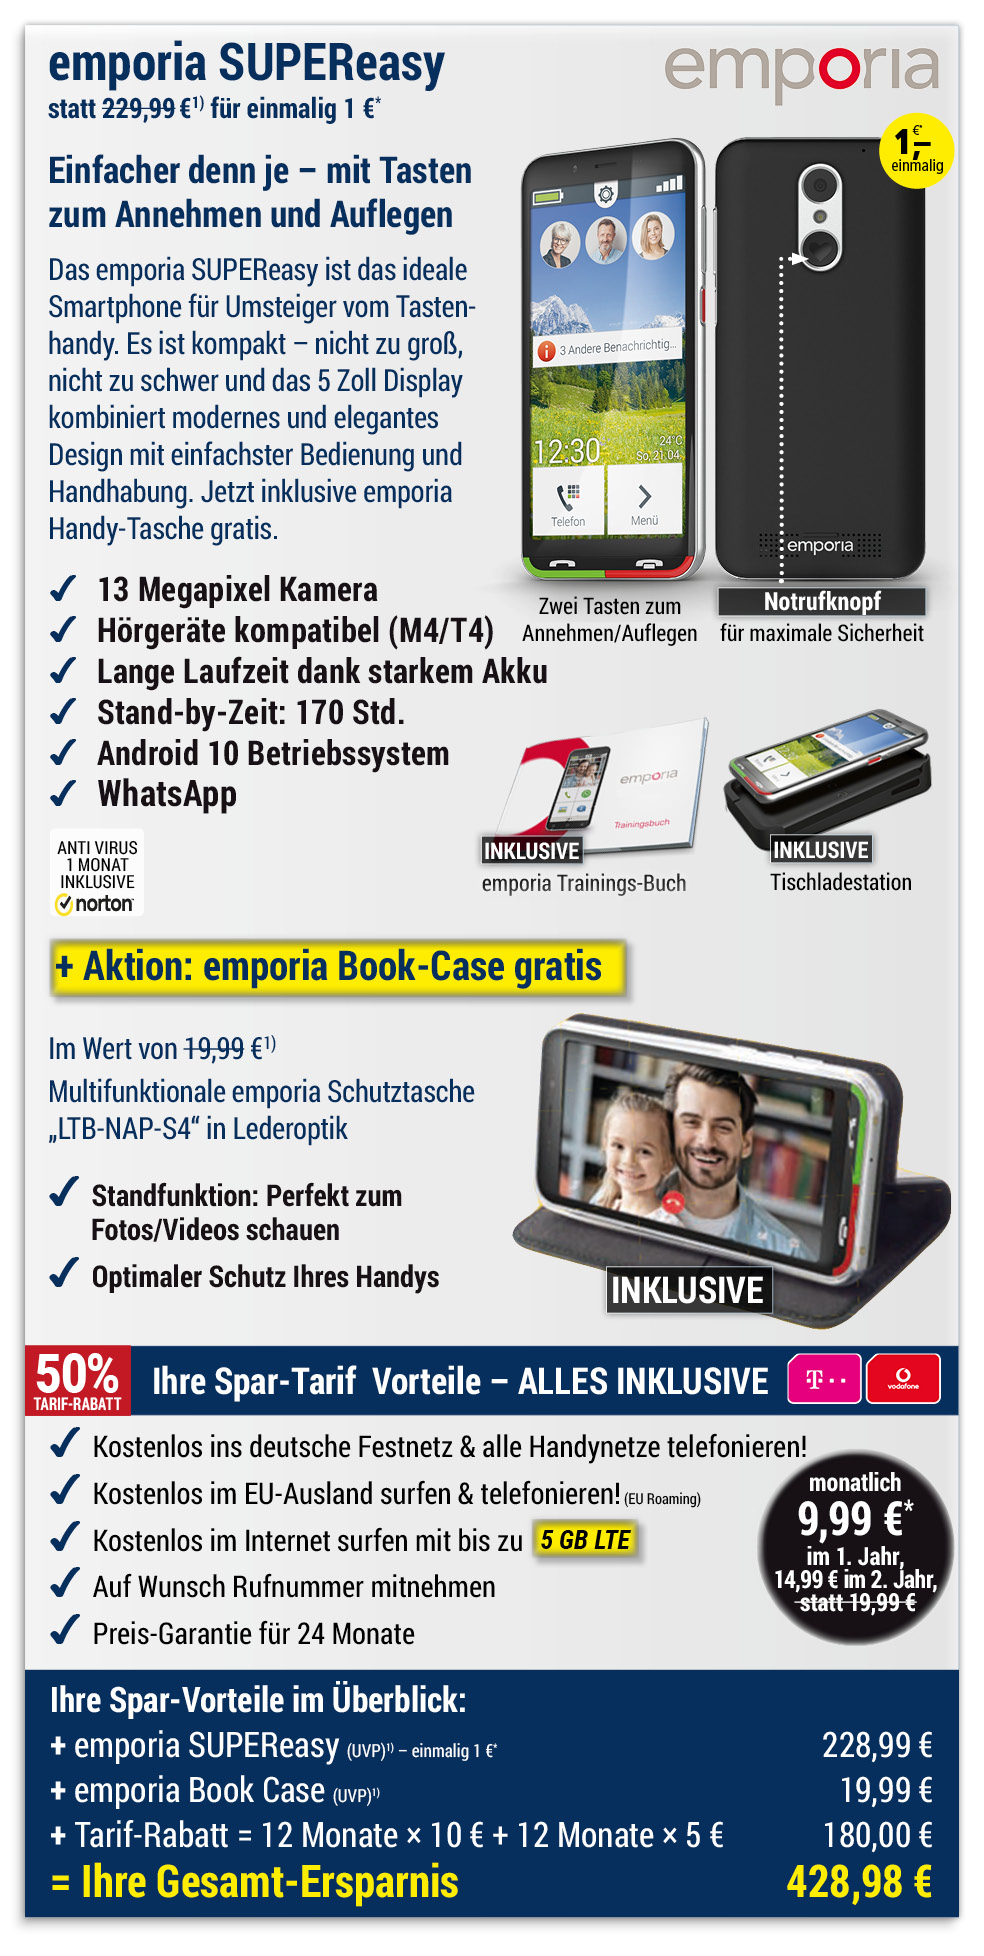 Für nur 1 €*: emporia SUPEReasy + Bookcase mit ALL NET FLAT für 9,99 €/Monat im ersten Jahr